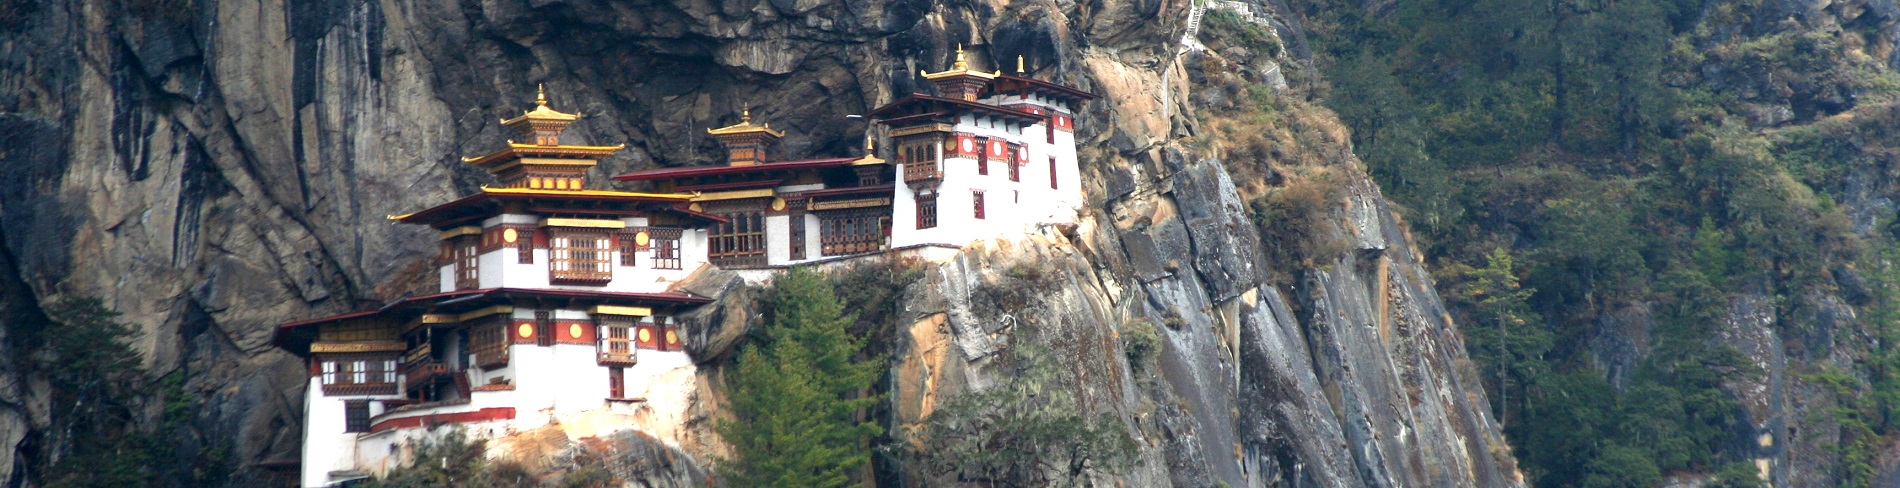 Bhutan Little Buddha